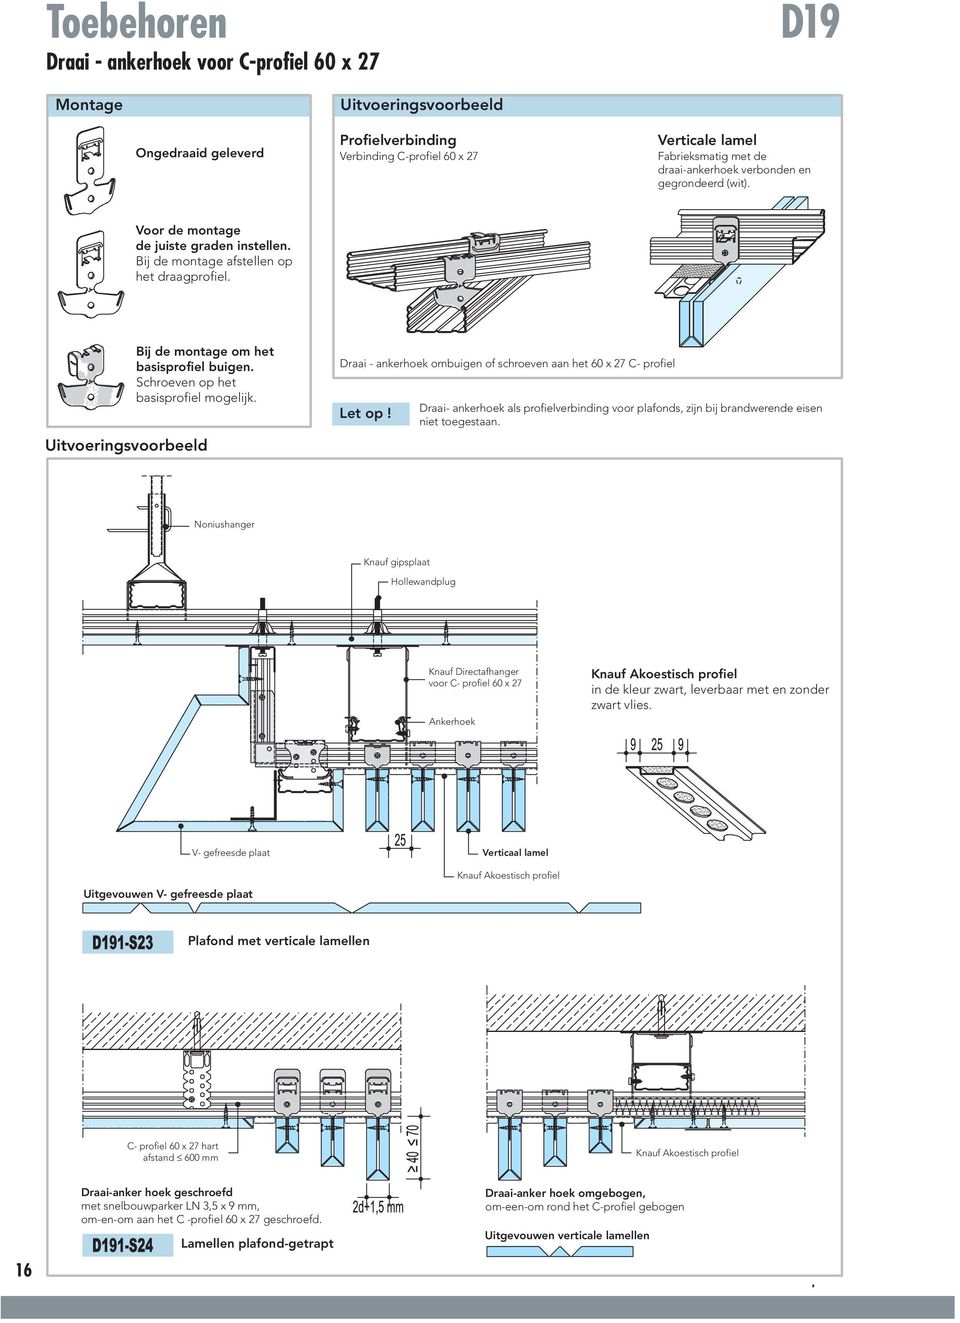 Uitvoeringsvoorbeeld Draai - ankerhoek ombuigen of schroeven aan het 60 x 27 C- profiel Let op! Draai- ankerhoek als profielverbinding voor plafonds, zijn bij brandwerende eisen niet toegestaan.